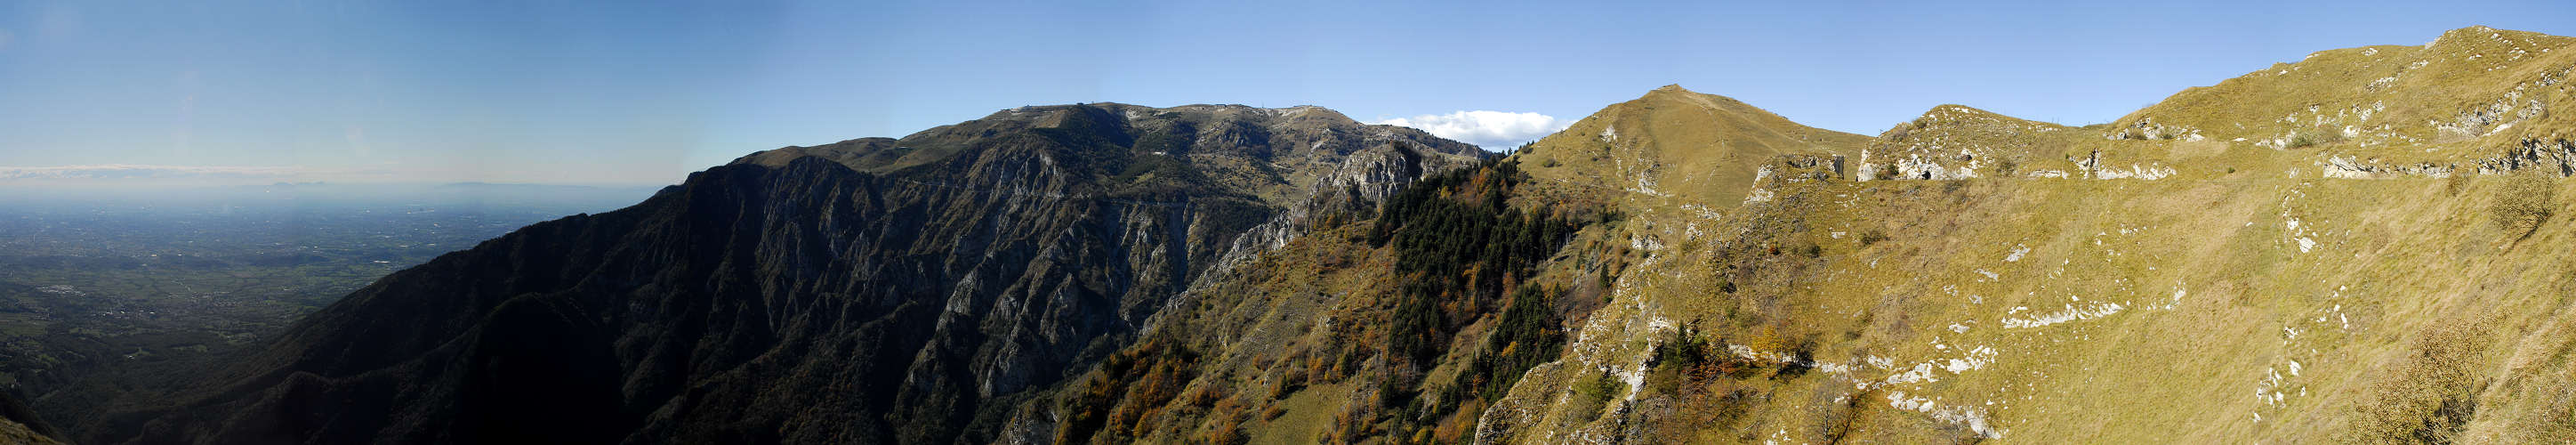 Meatte, Boccaor, Archeson, Valle San Liberale, Monte Grappa - fotografia panoramica